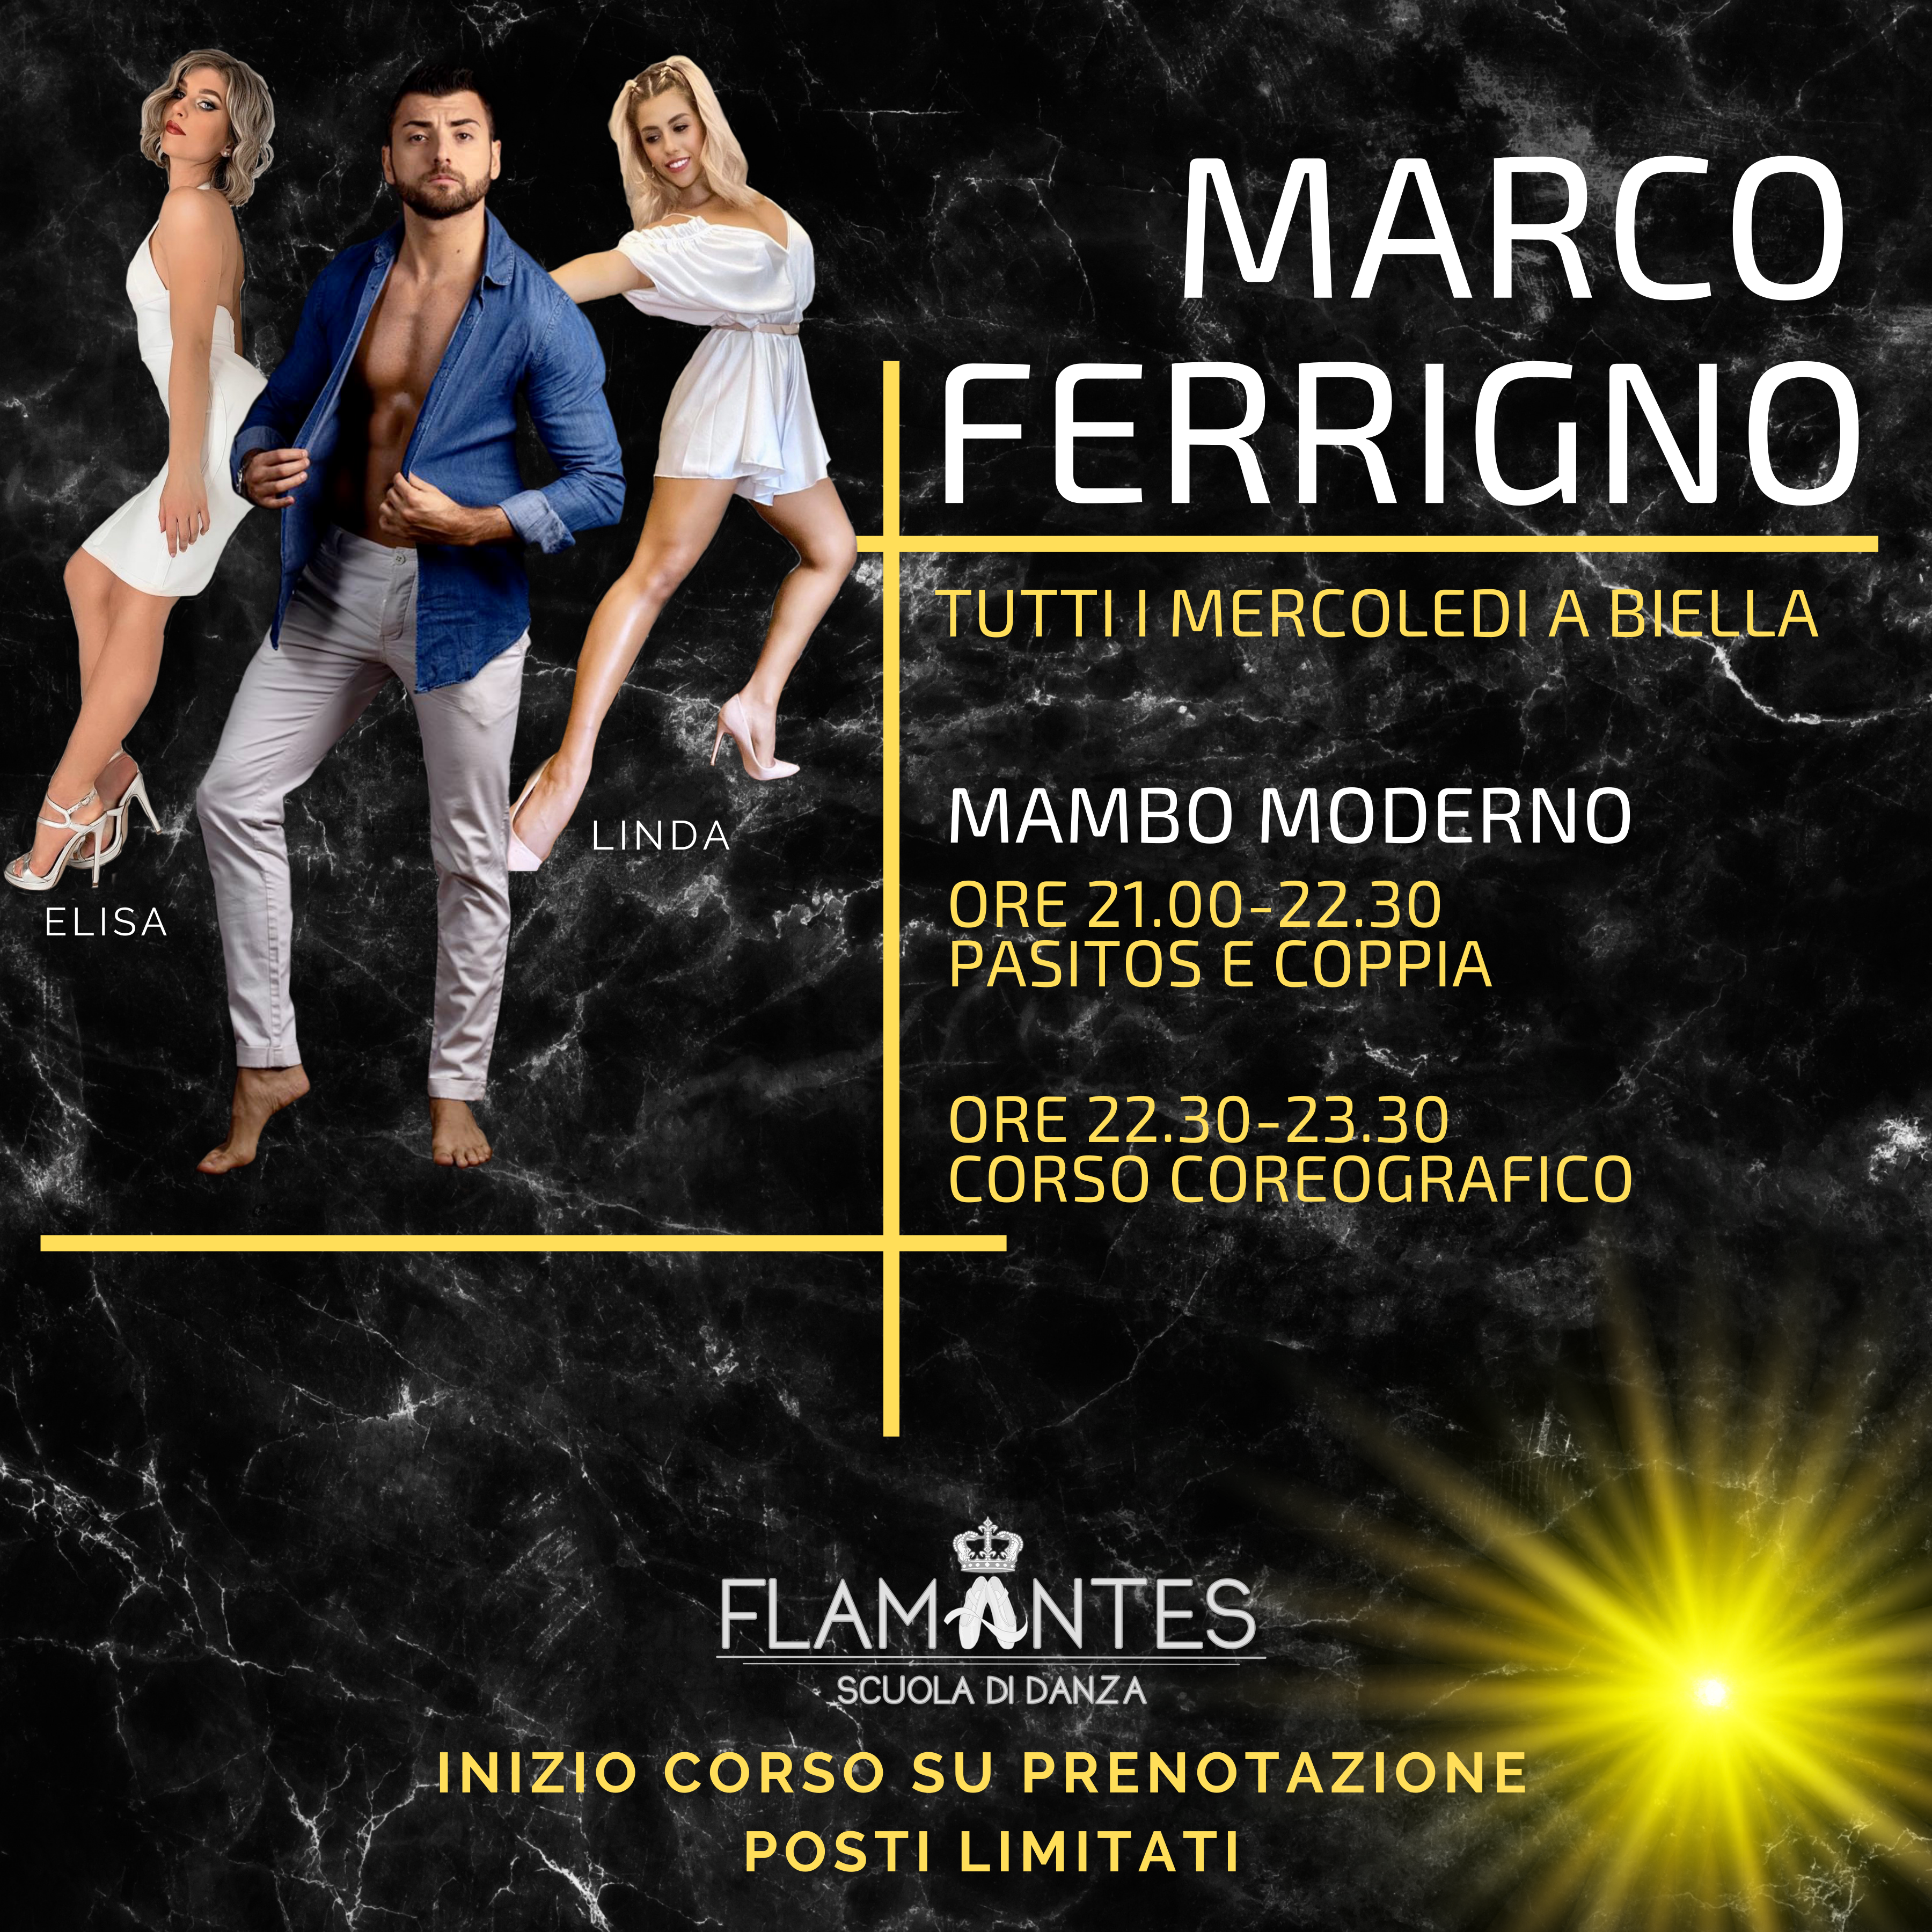 Mambo Moderno con Marco Ferrigno